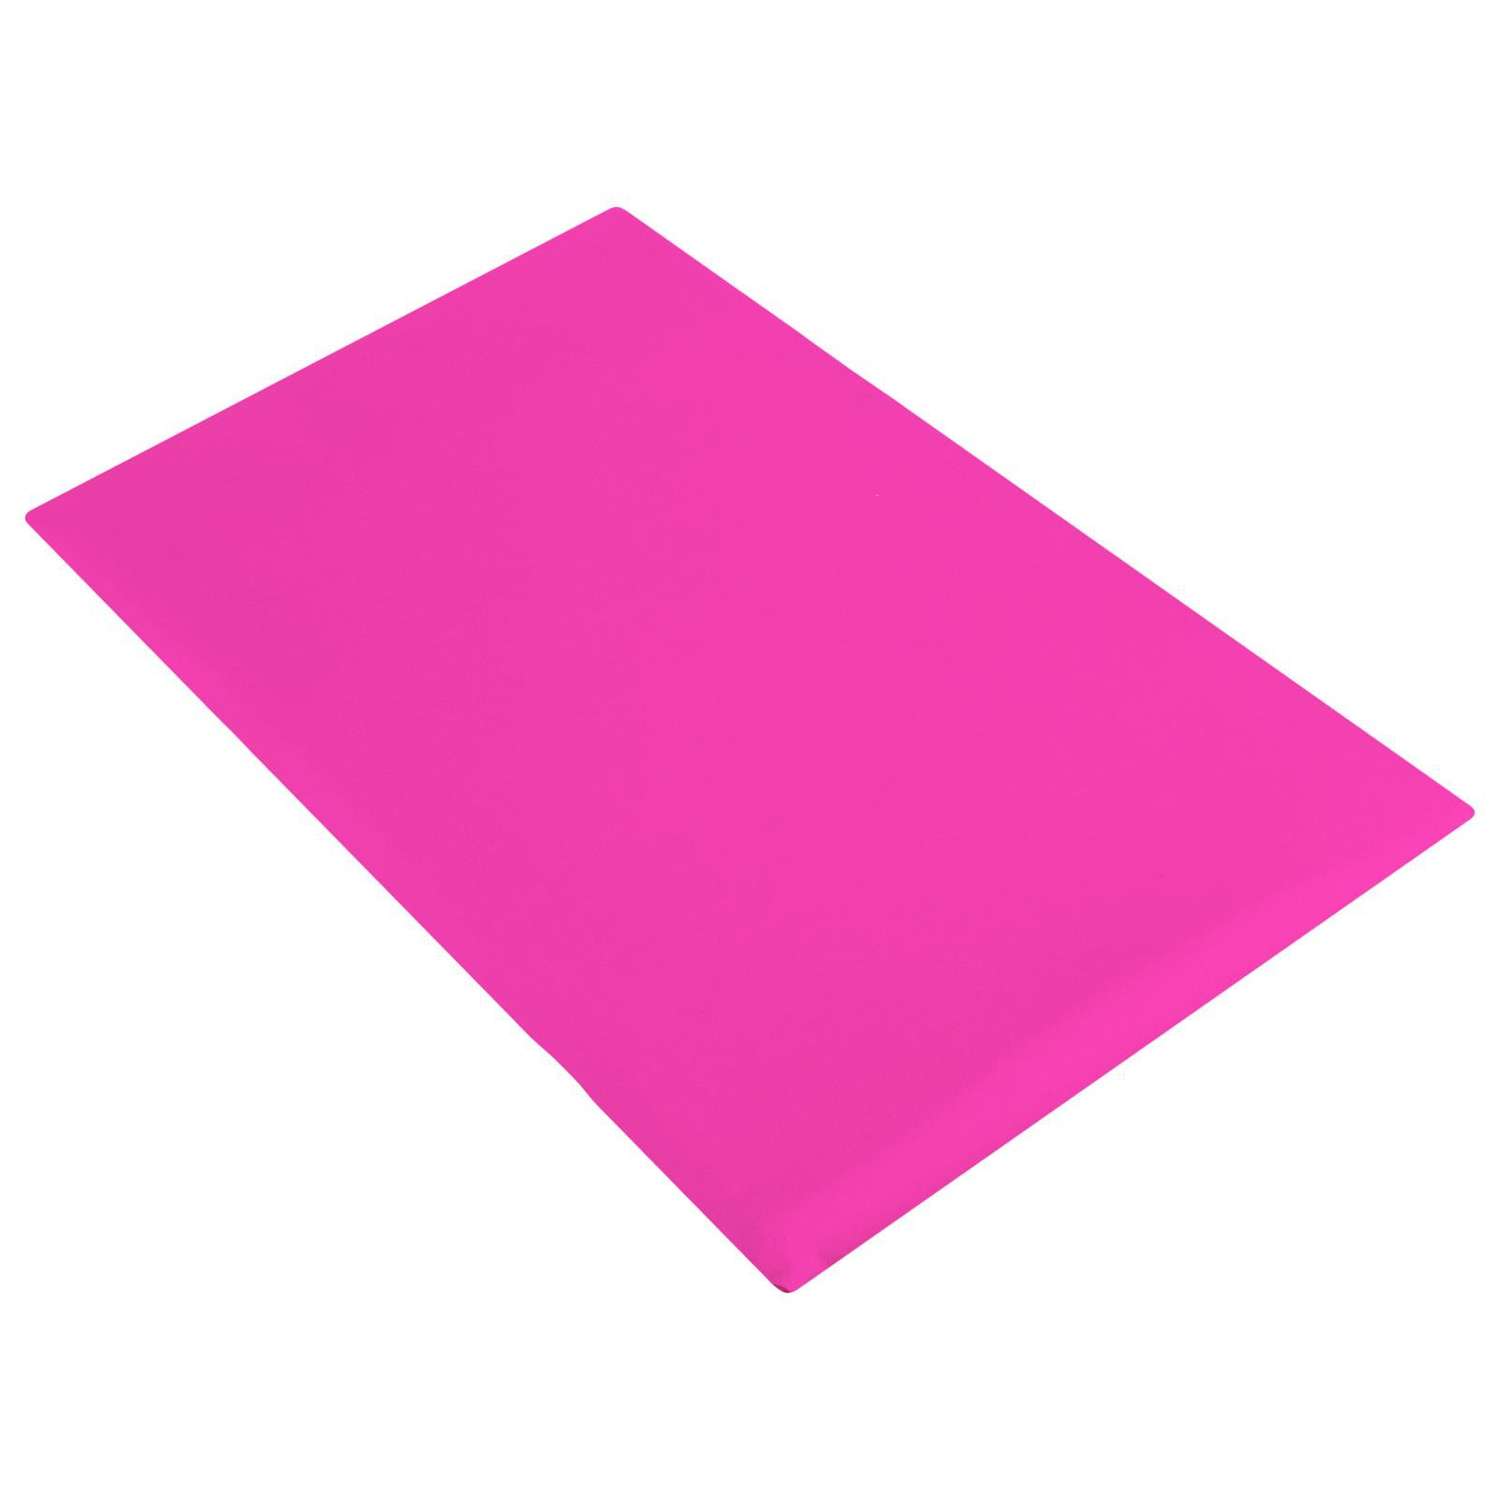 Защита спины гимнастическая Grace Dance подушка для растяжки. лайкра. цвет розовый. 38 х 25 см - фото 3